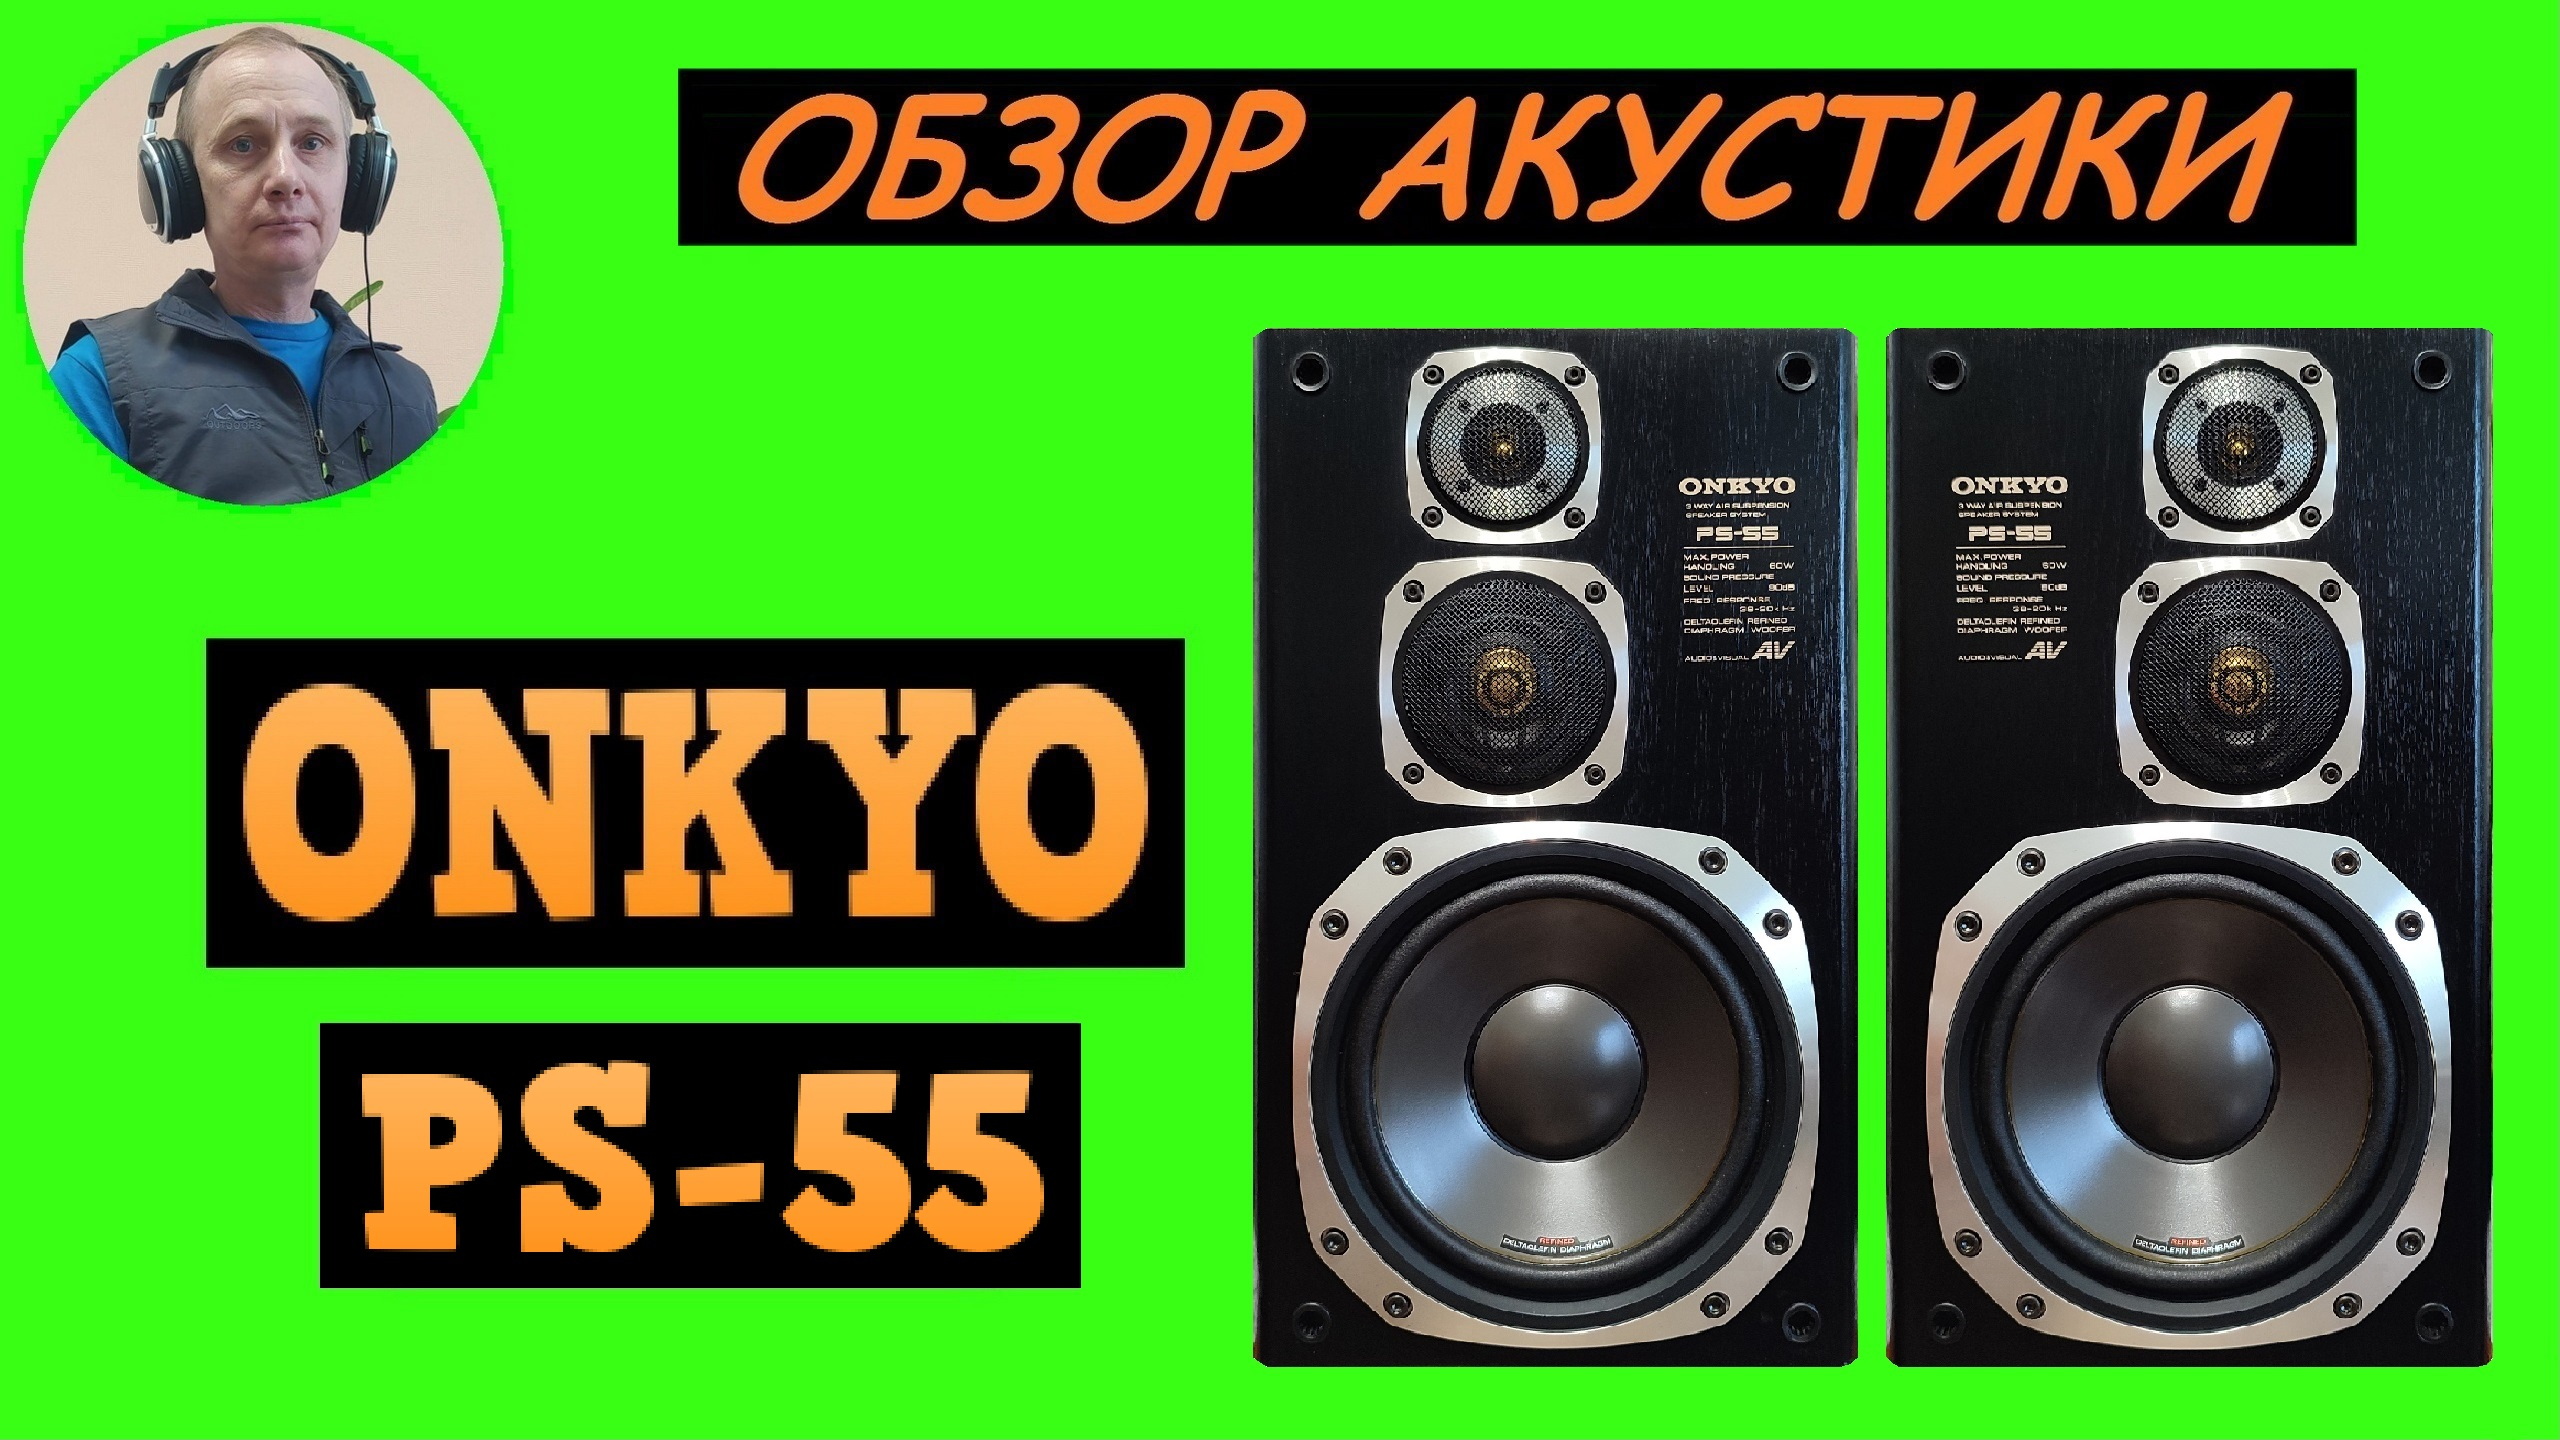 Обзор акустики ONKYO PS-55